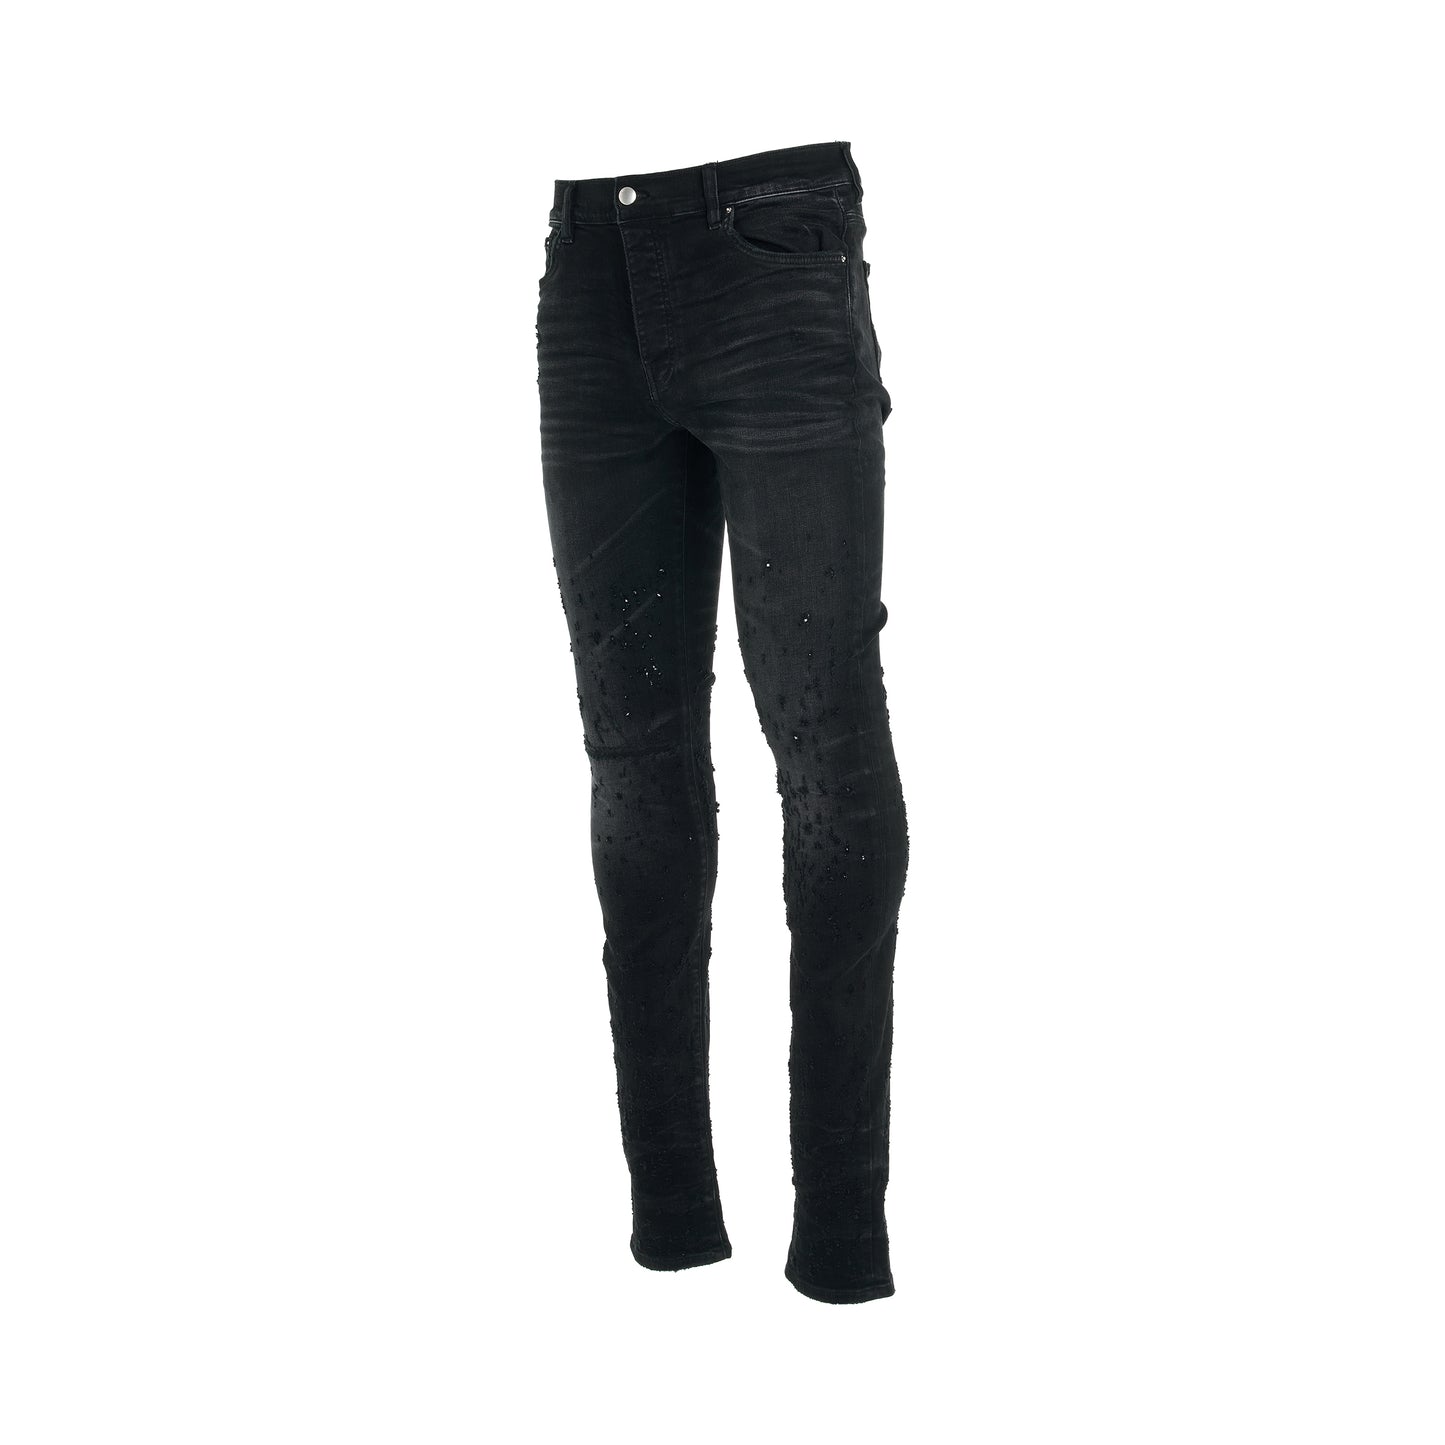 Shotgun Skinny Jeans in Faded Black